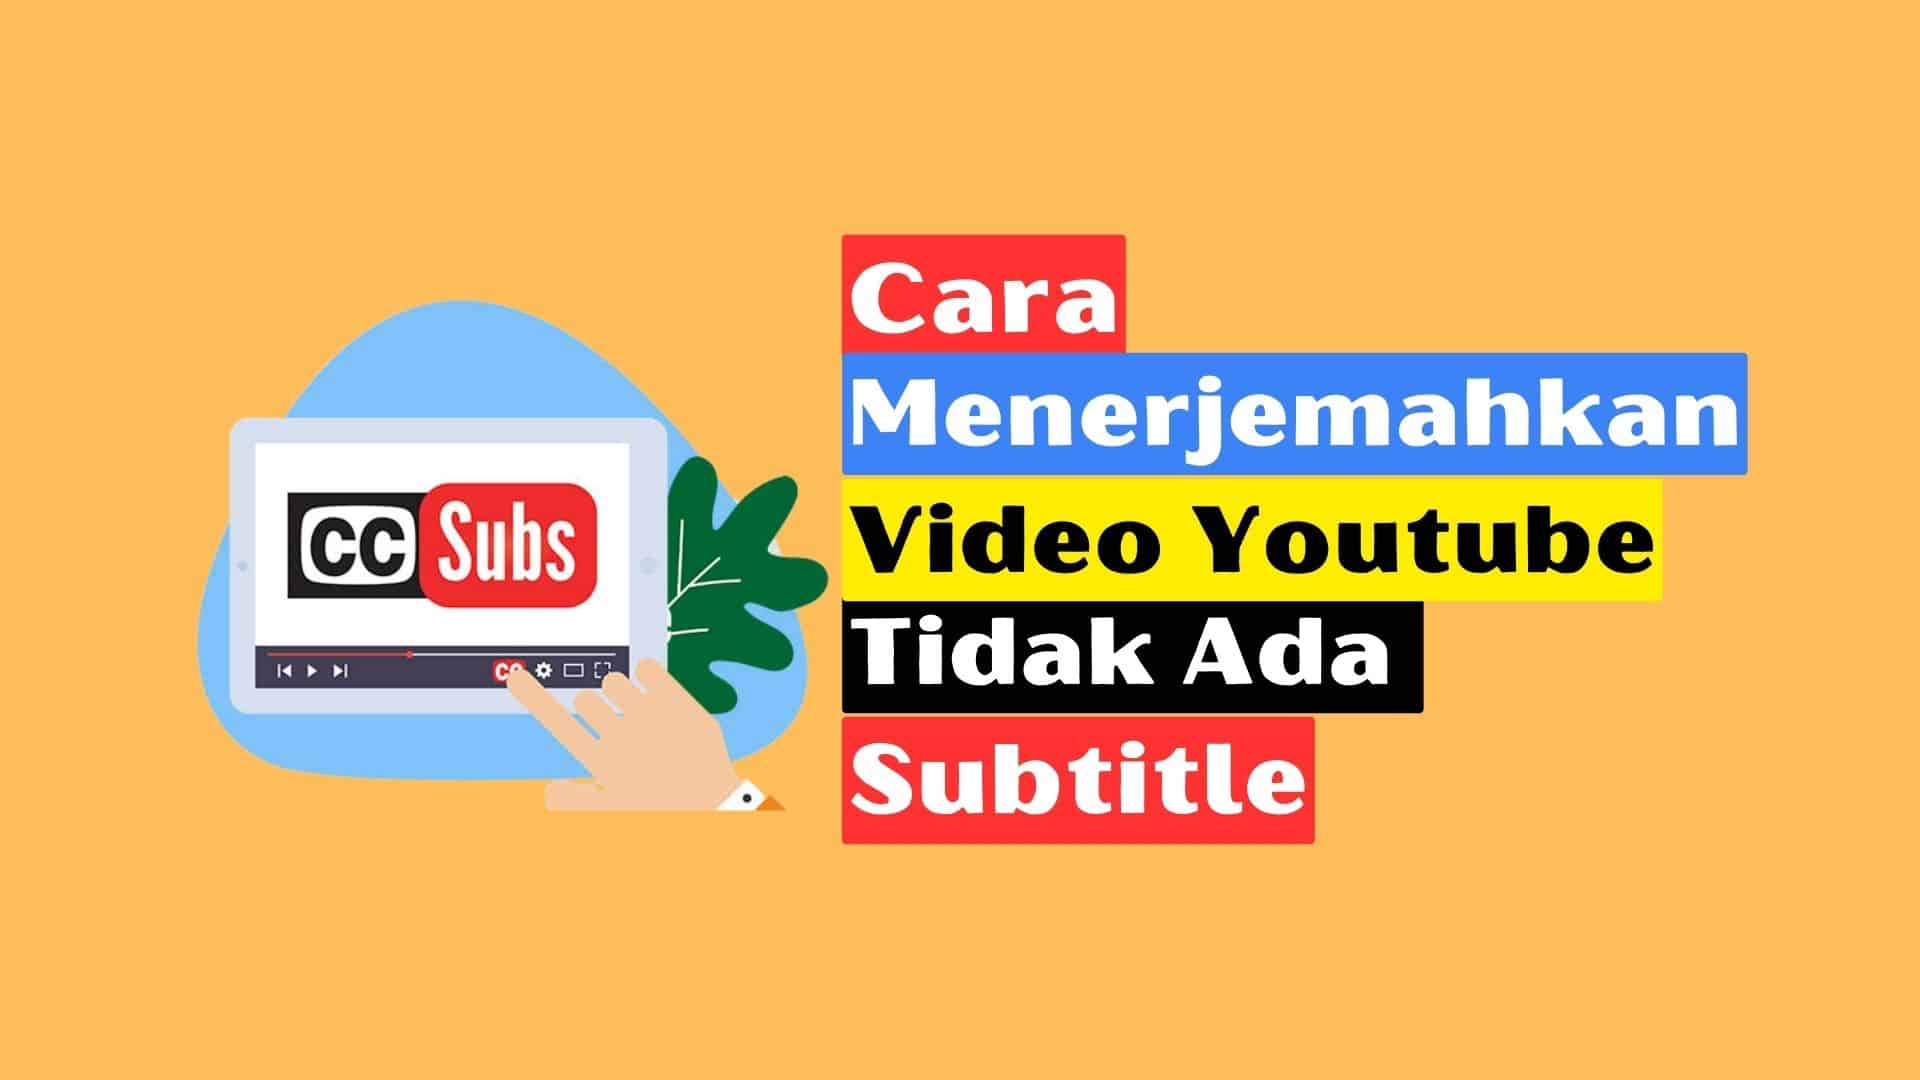 Cara Menerjemahkan Video Youtube Yang Tidak Ada Subtitle Indonesia